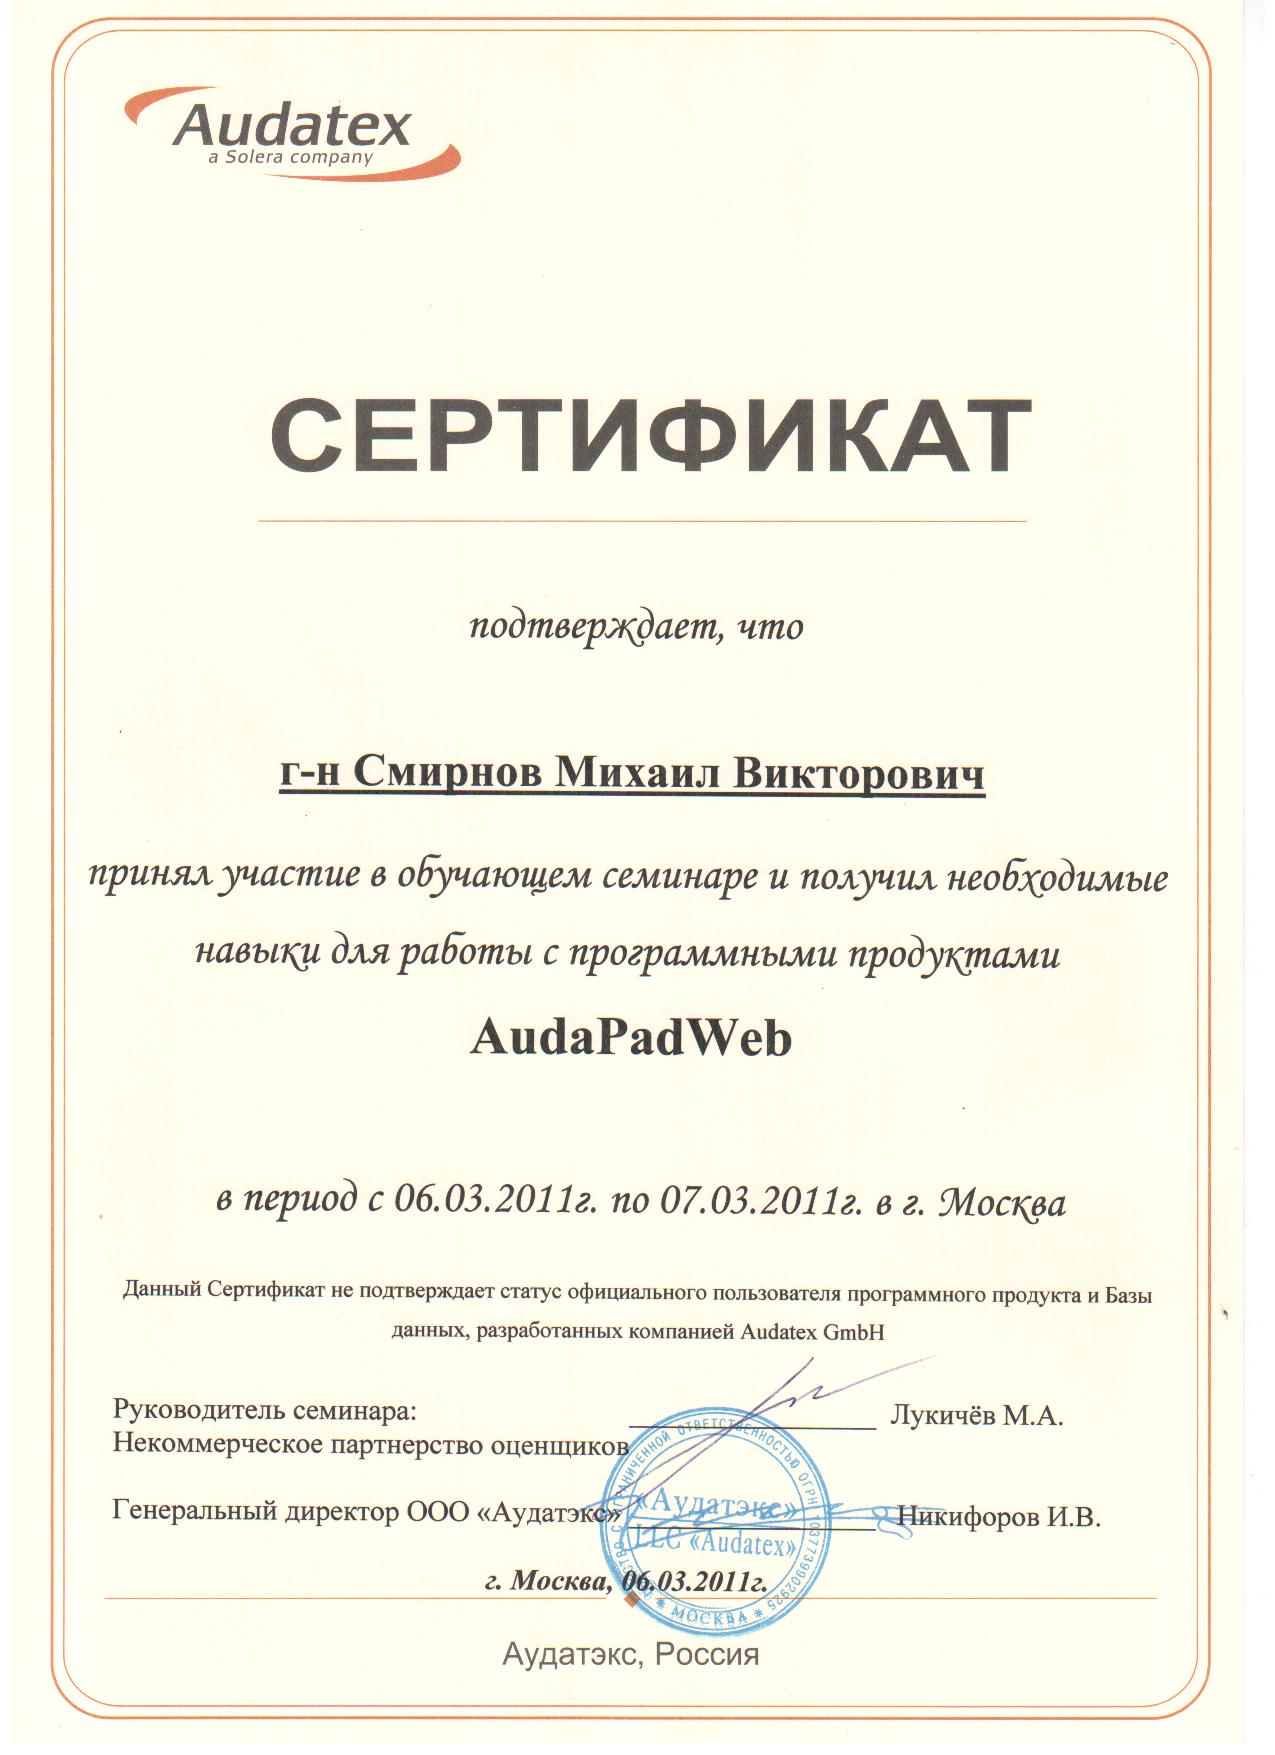 Сертификат AudaPadWeb